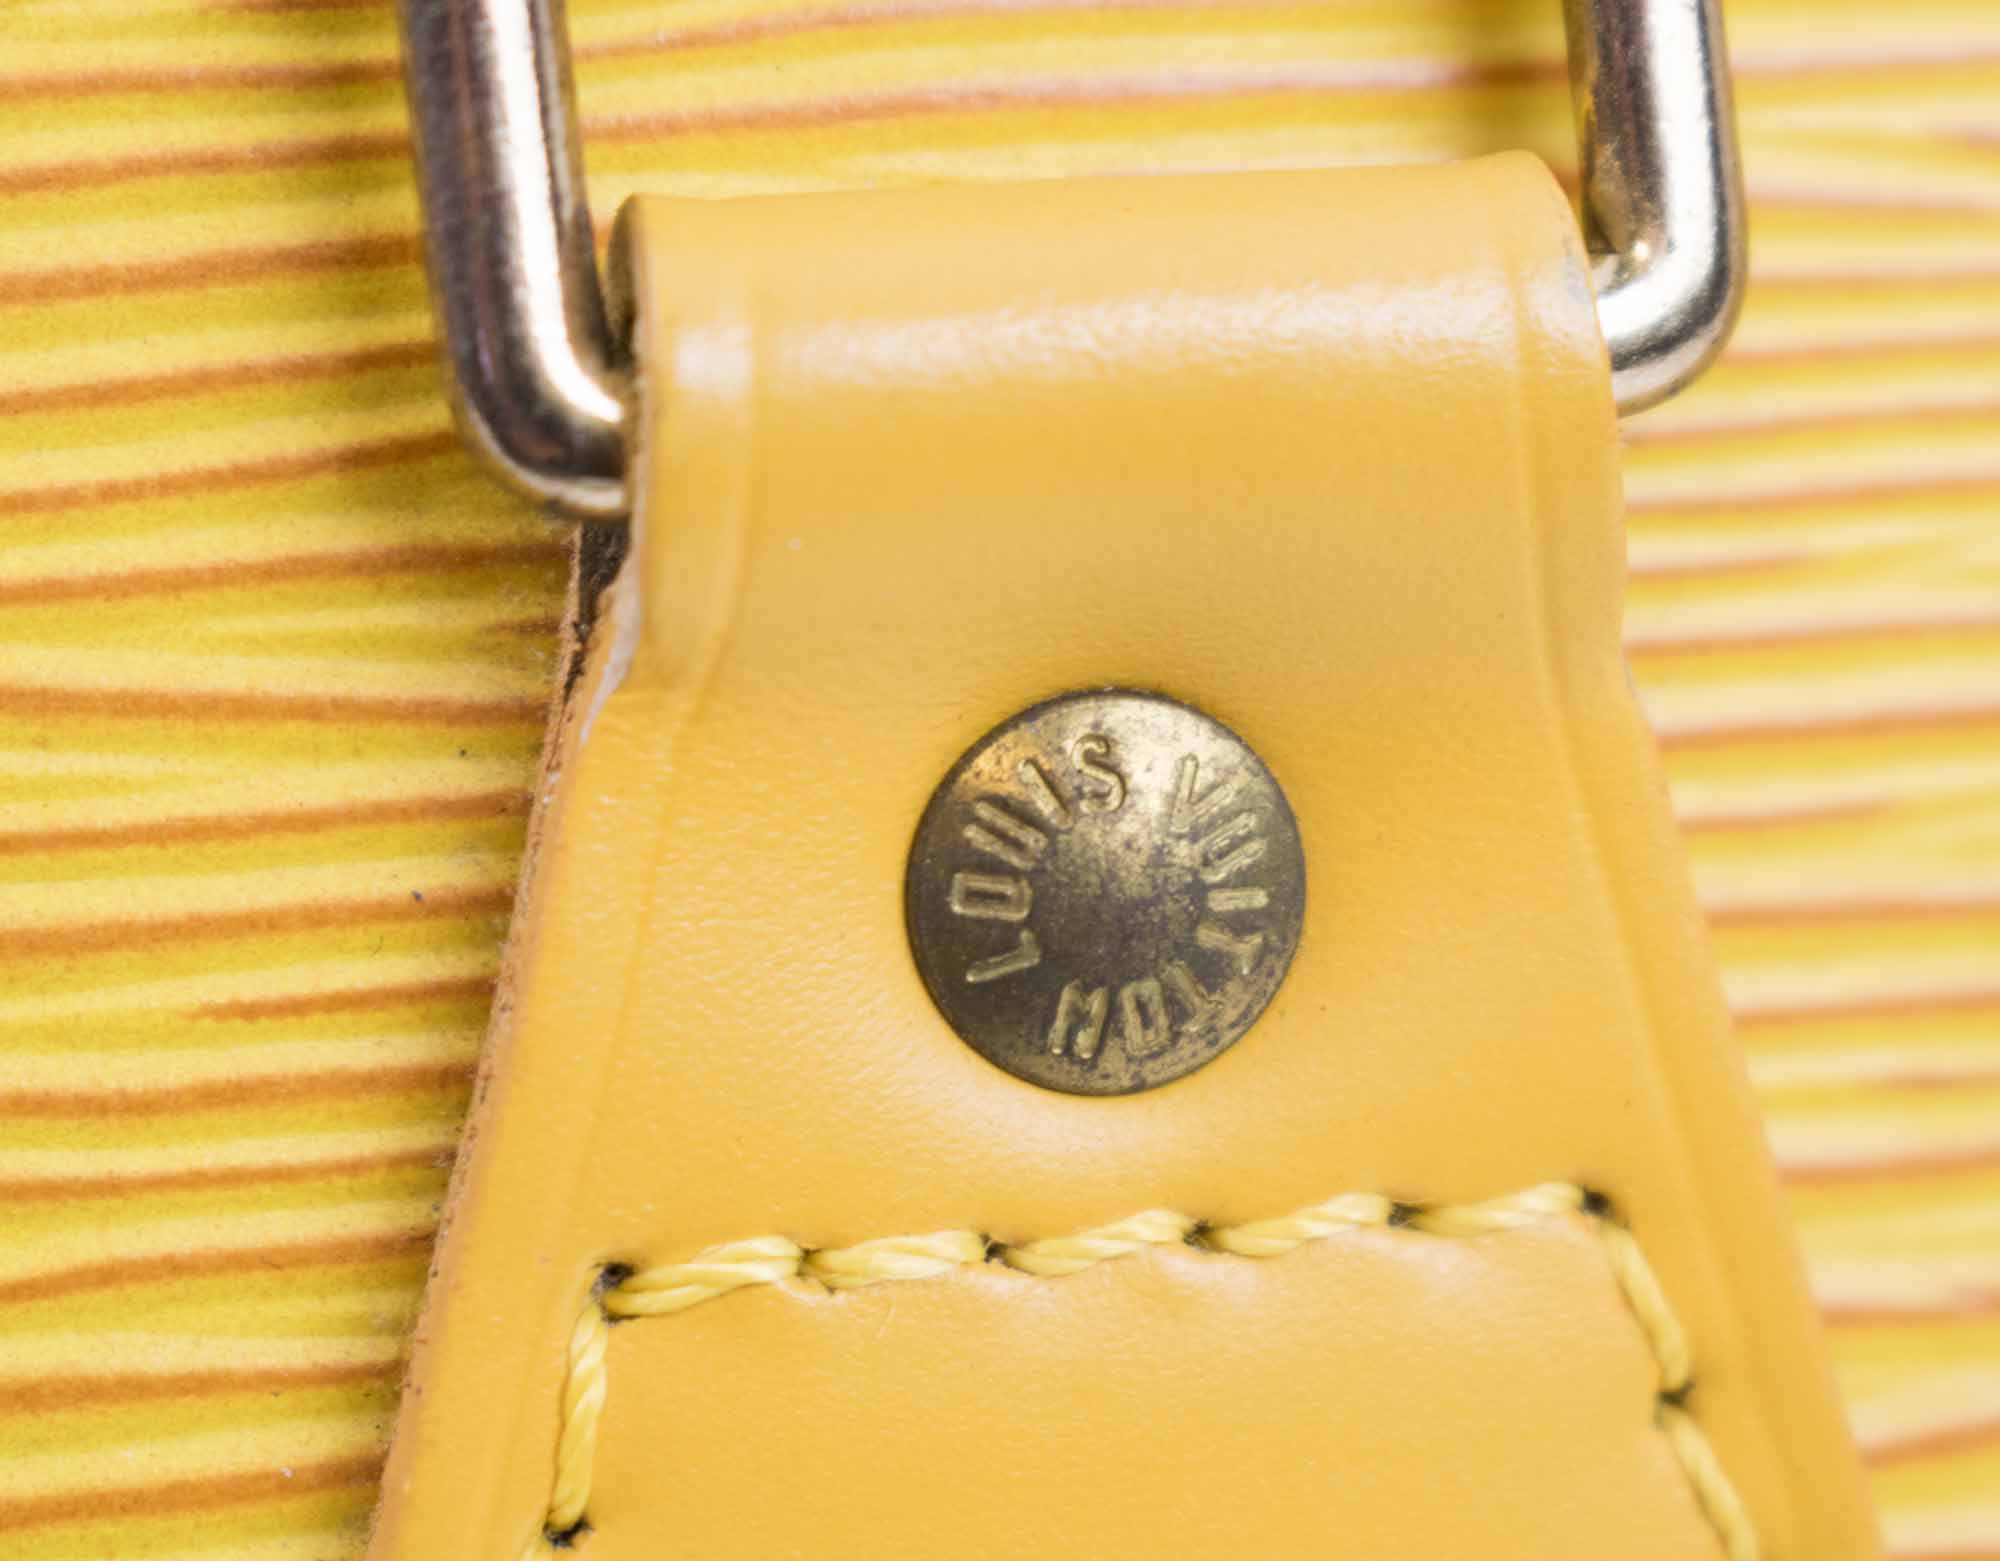 Louis Vuitton Tassil Yellow Epi Leather Marco Wallet - Yoogi's Closet